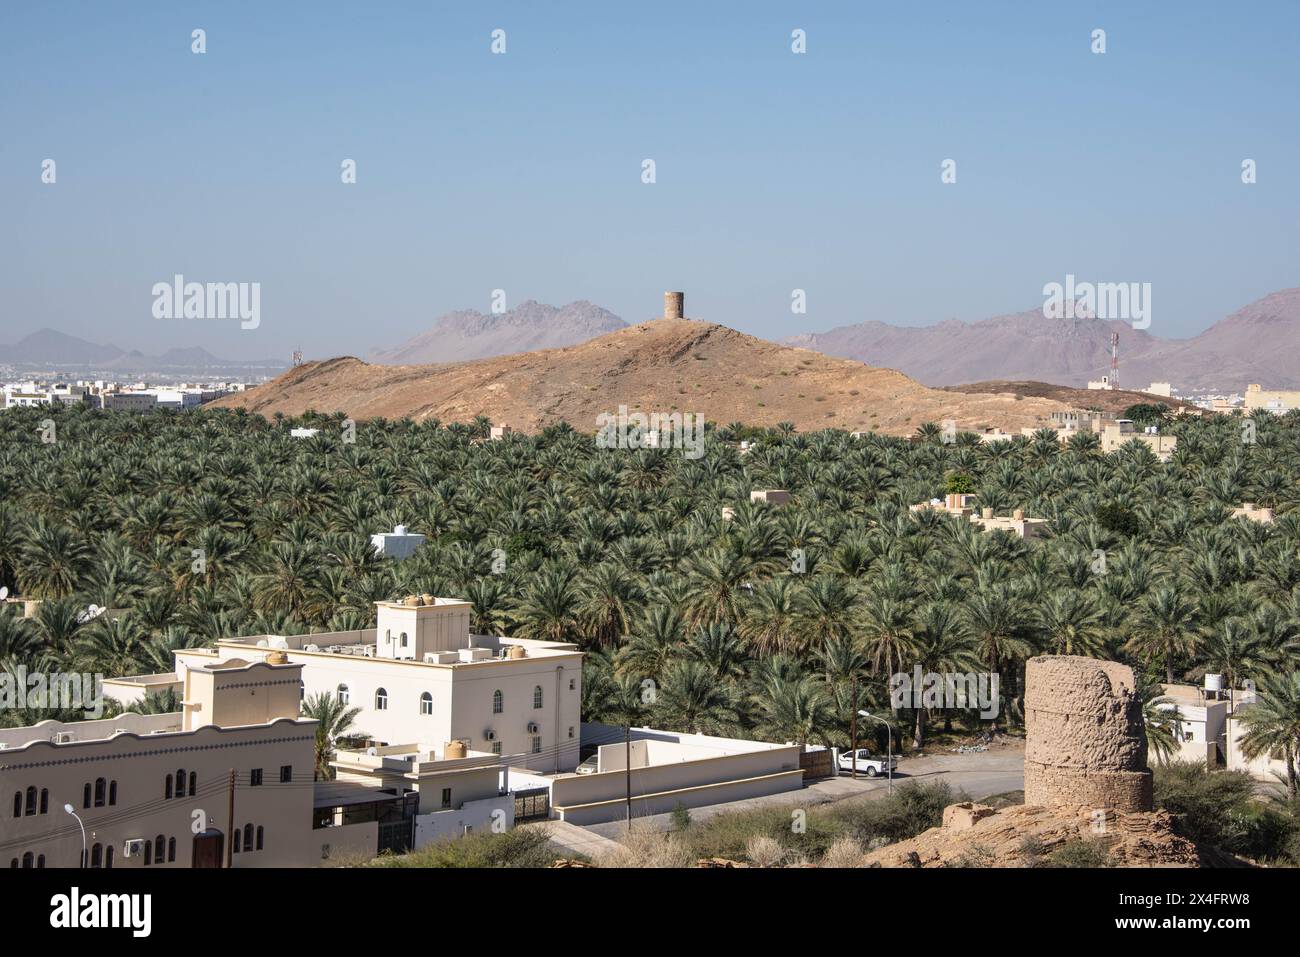 Une oasis de palmiers dattiers, Birkat al Mouz, Oman Banque D'Images